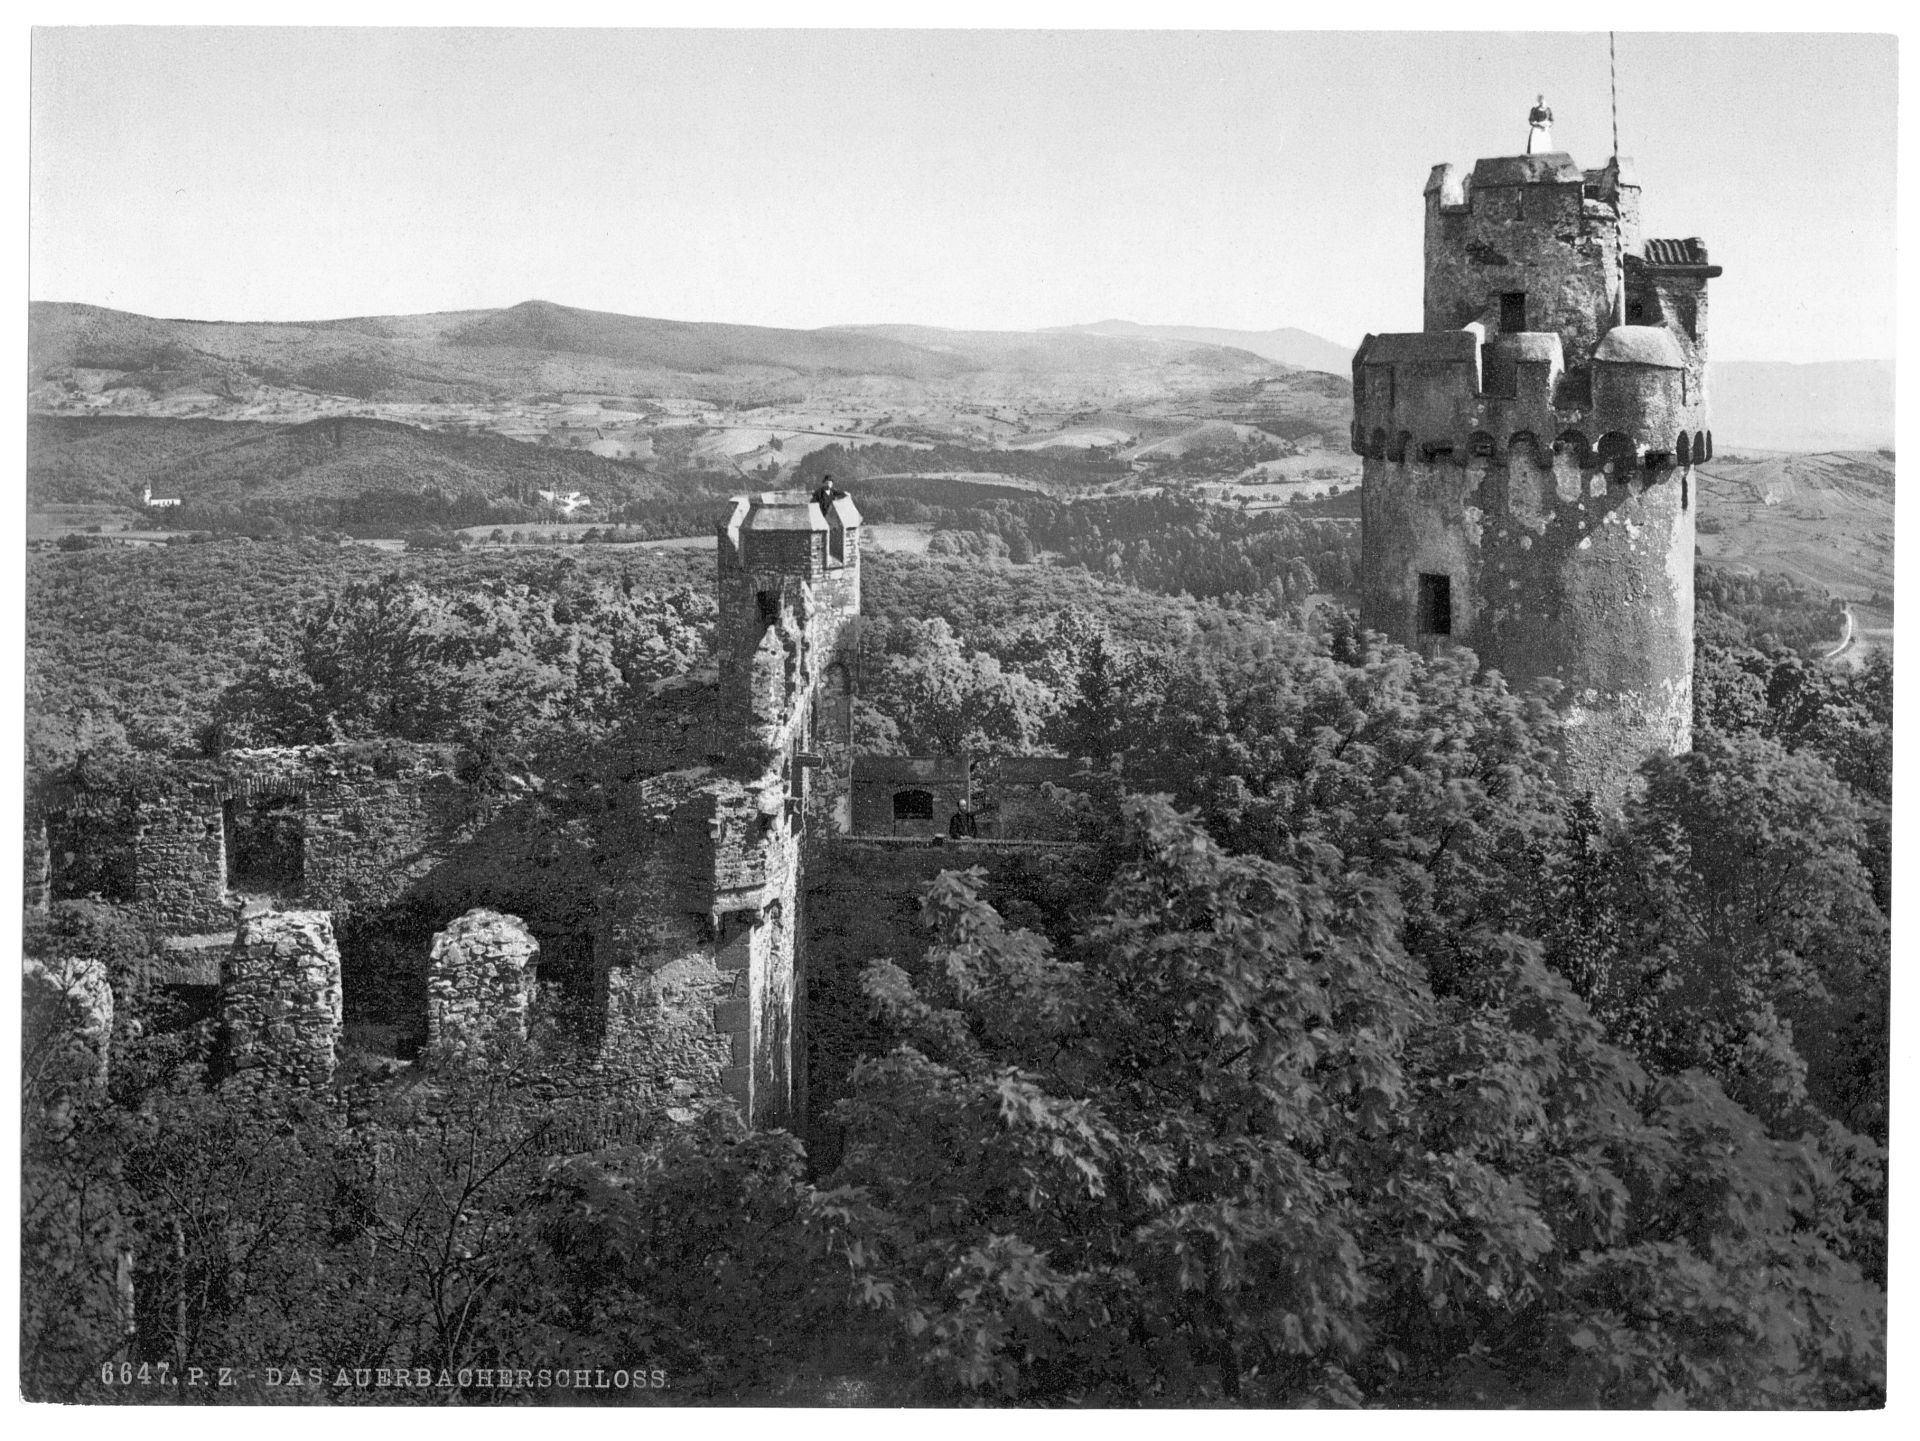 The castle, Auerbach, Hartz, Germany